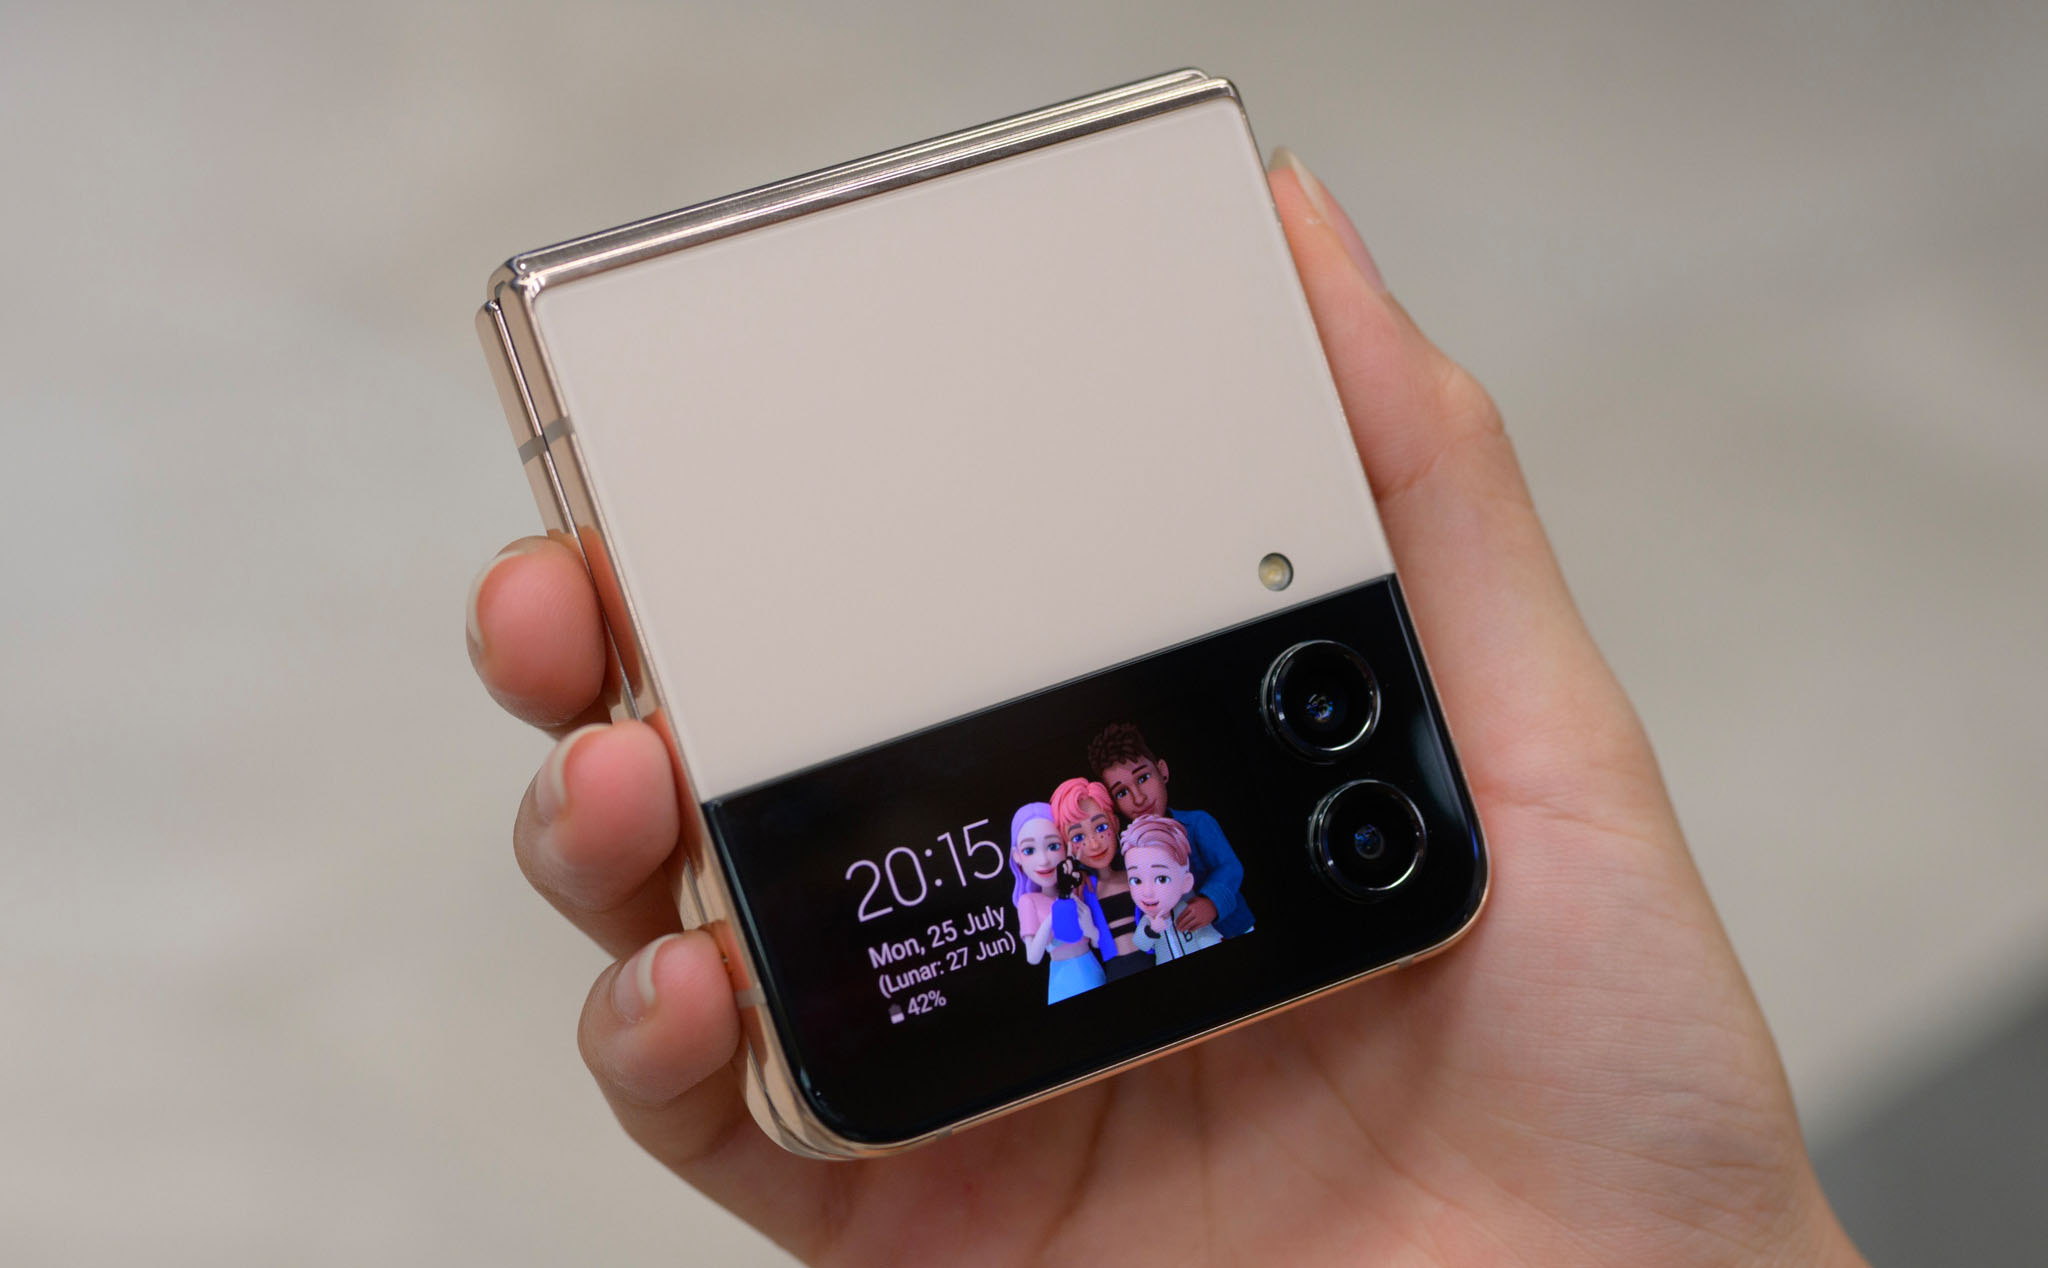 Galaxy Z Flip5 sẽ có màn hình ngoài lớn hơn, sử dụng bản lề mới để giảm độ hằn trên màn hình chính?